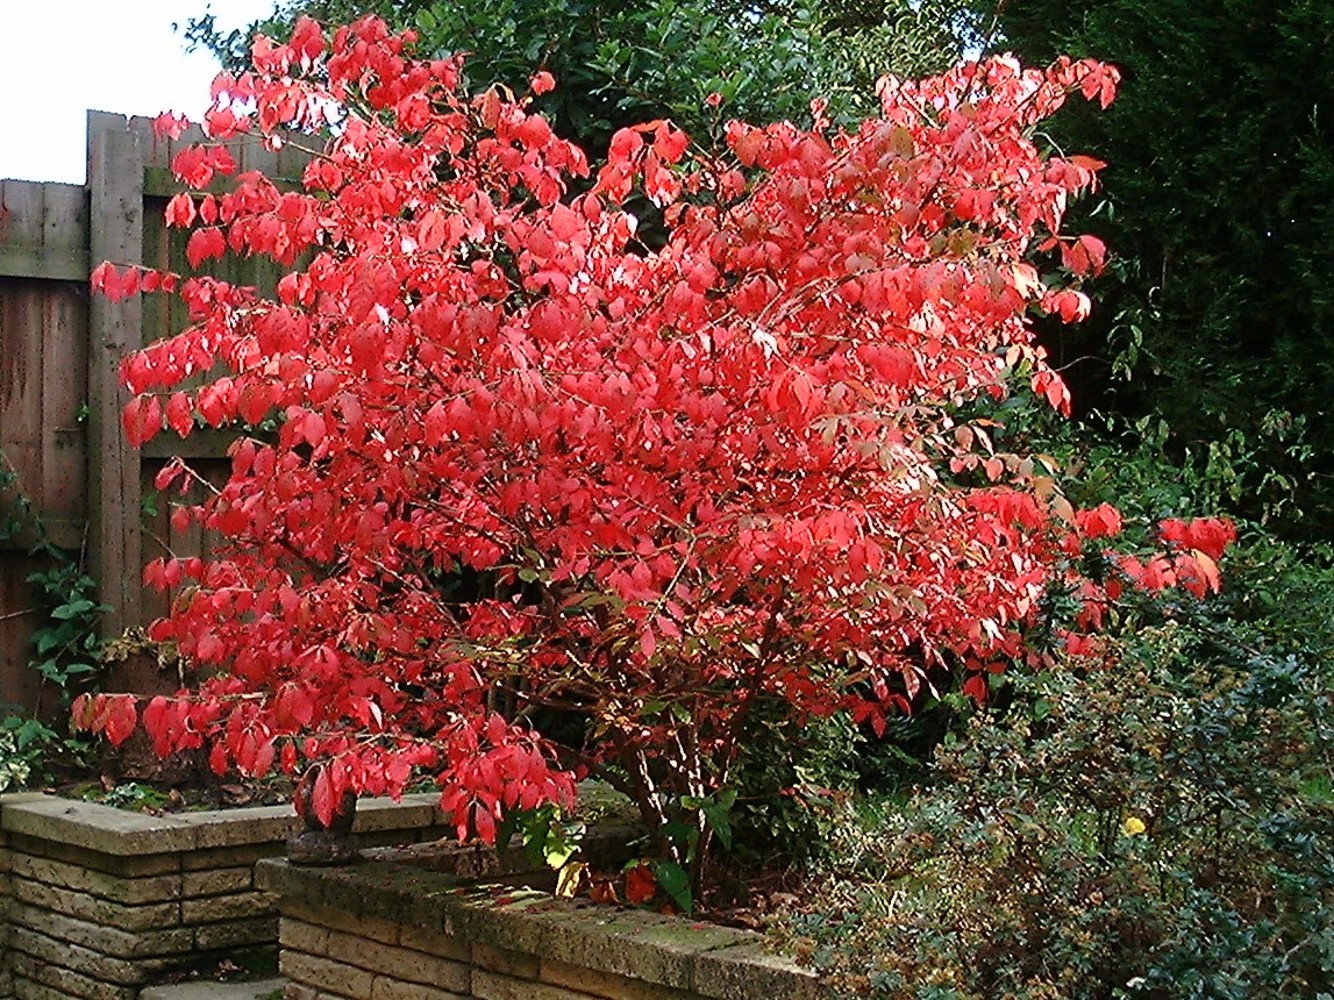 Euonymus alatus compactus in autumn colour